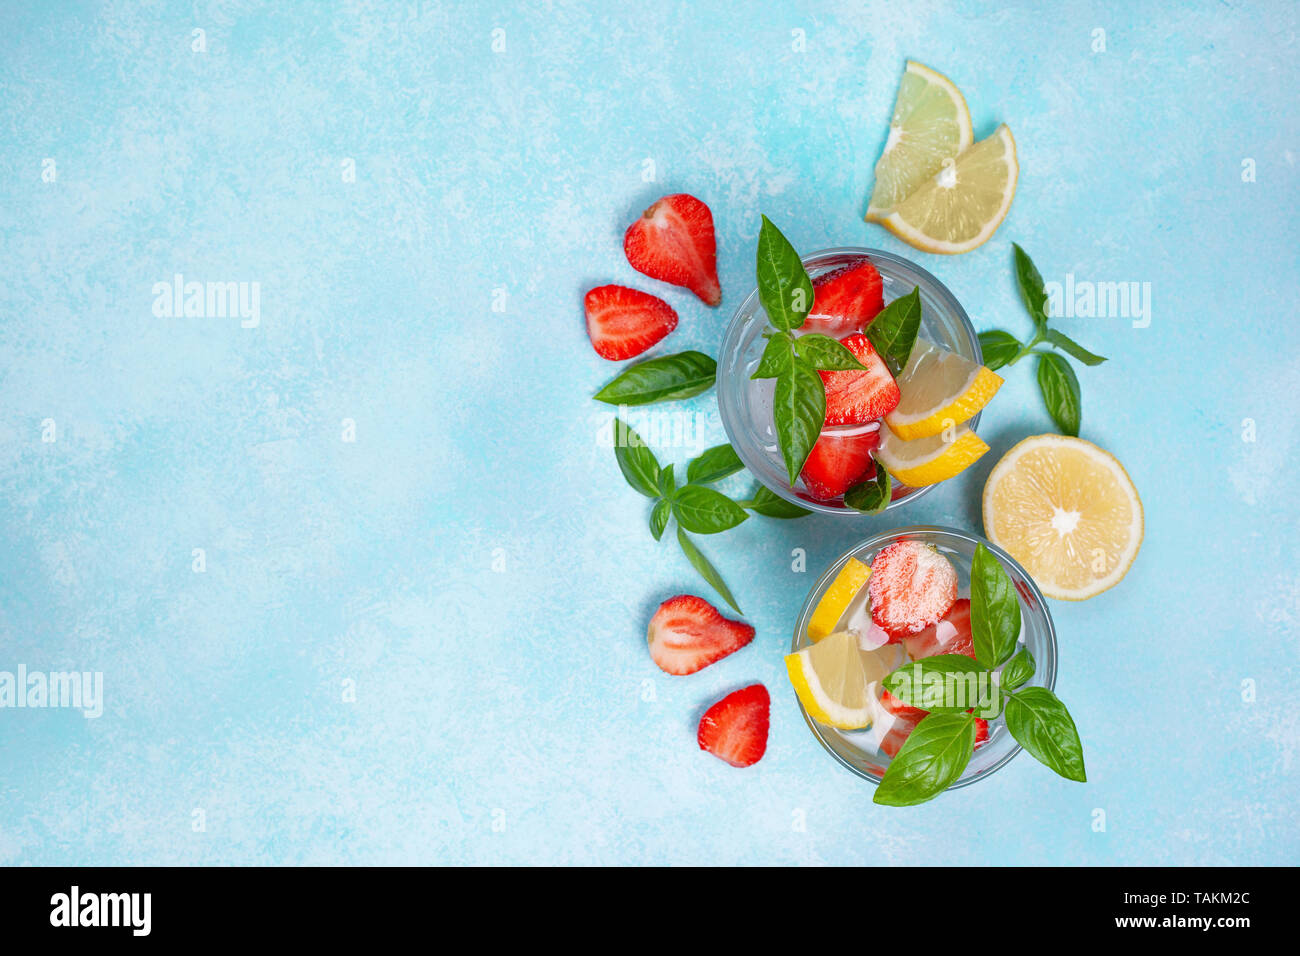 Basilic fraise dans un verre de limonade, de fraises fraîches, basilic sur fond bleu Banque D'Images